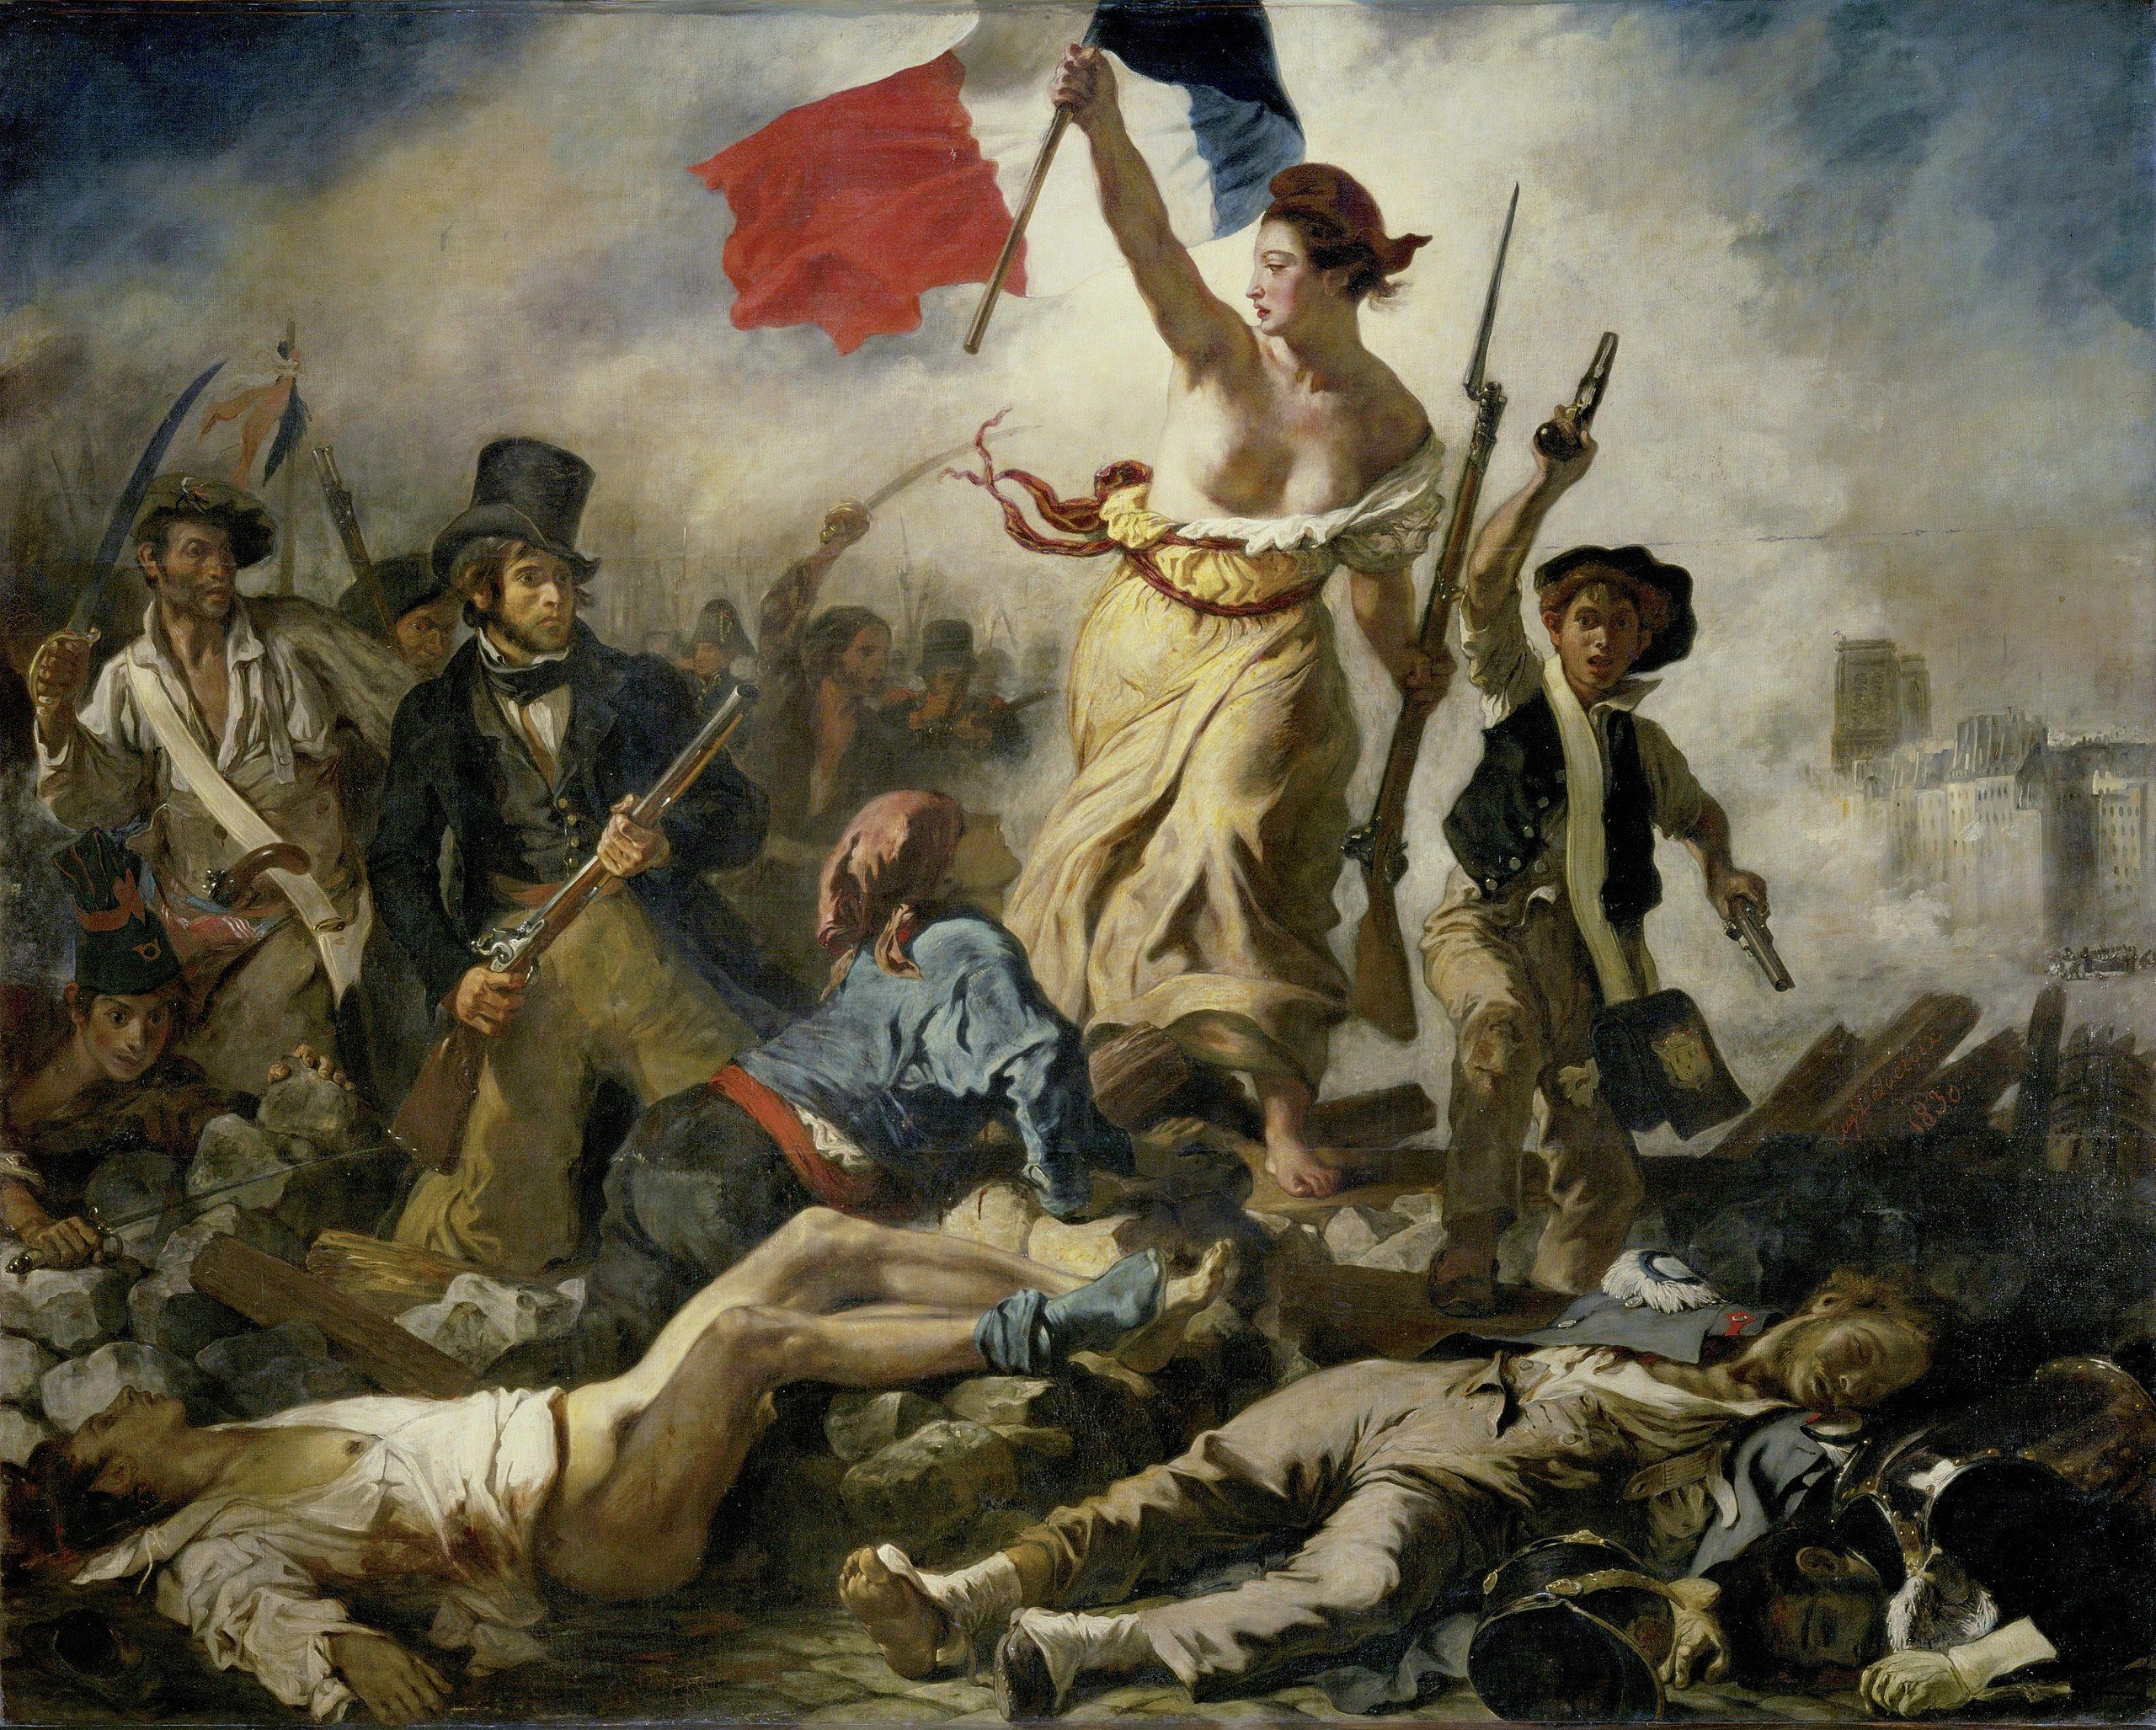 'La revolución guiando al pueblo', de Delacroix.